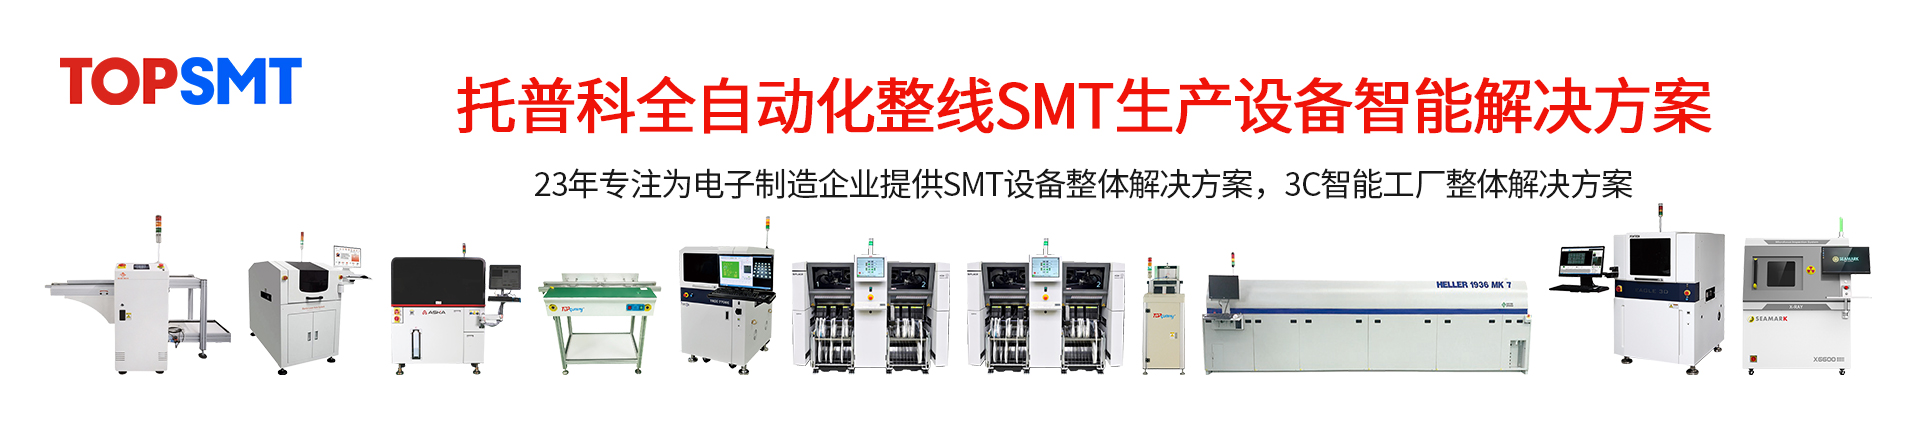 托普科SMT整线设备-SMT生产线-SMT二手设备租赁出售.jpg